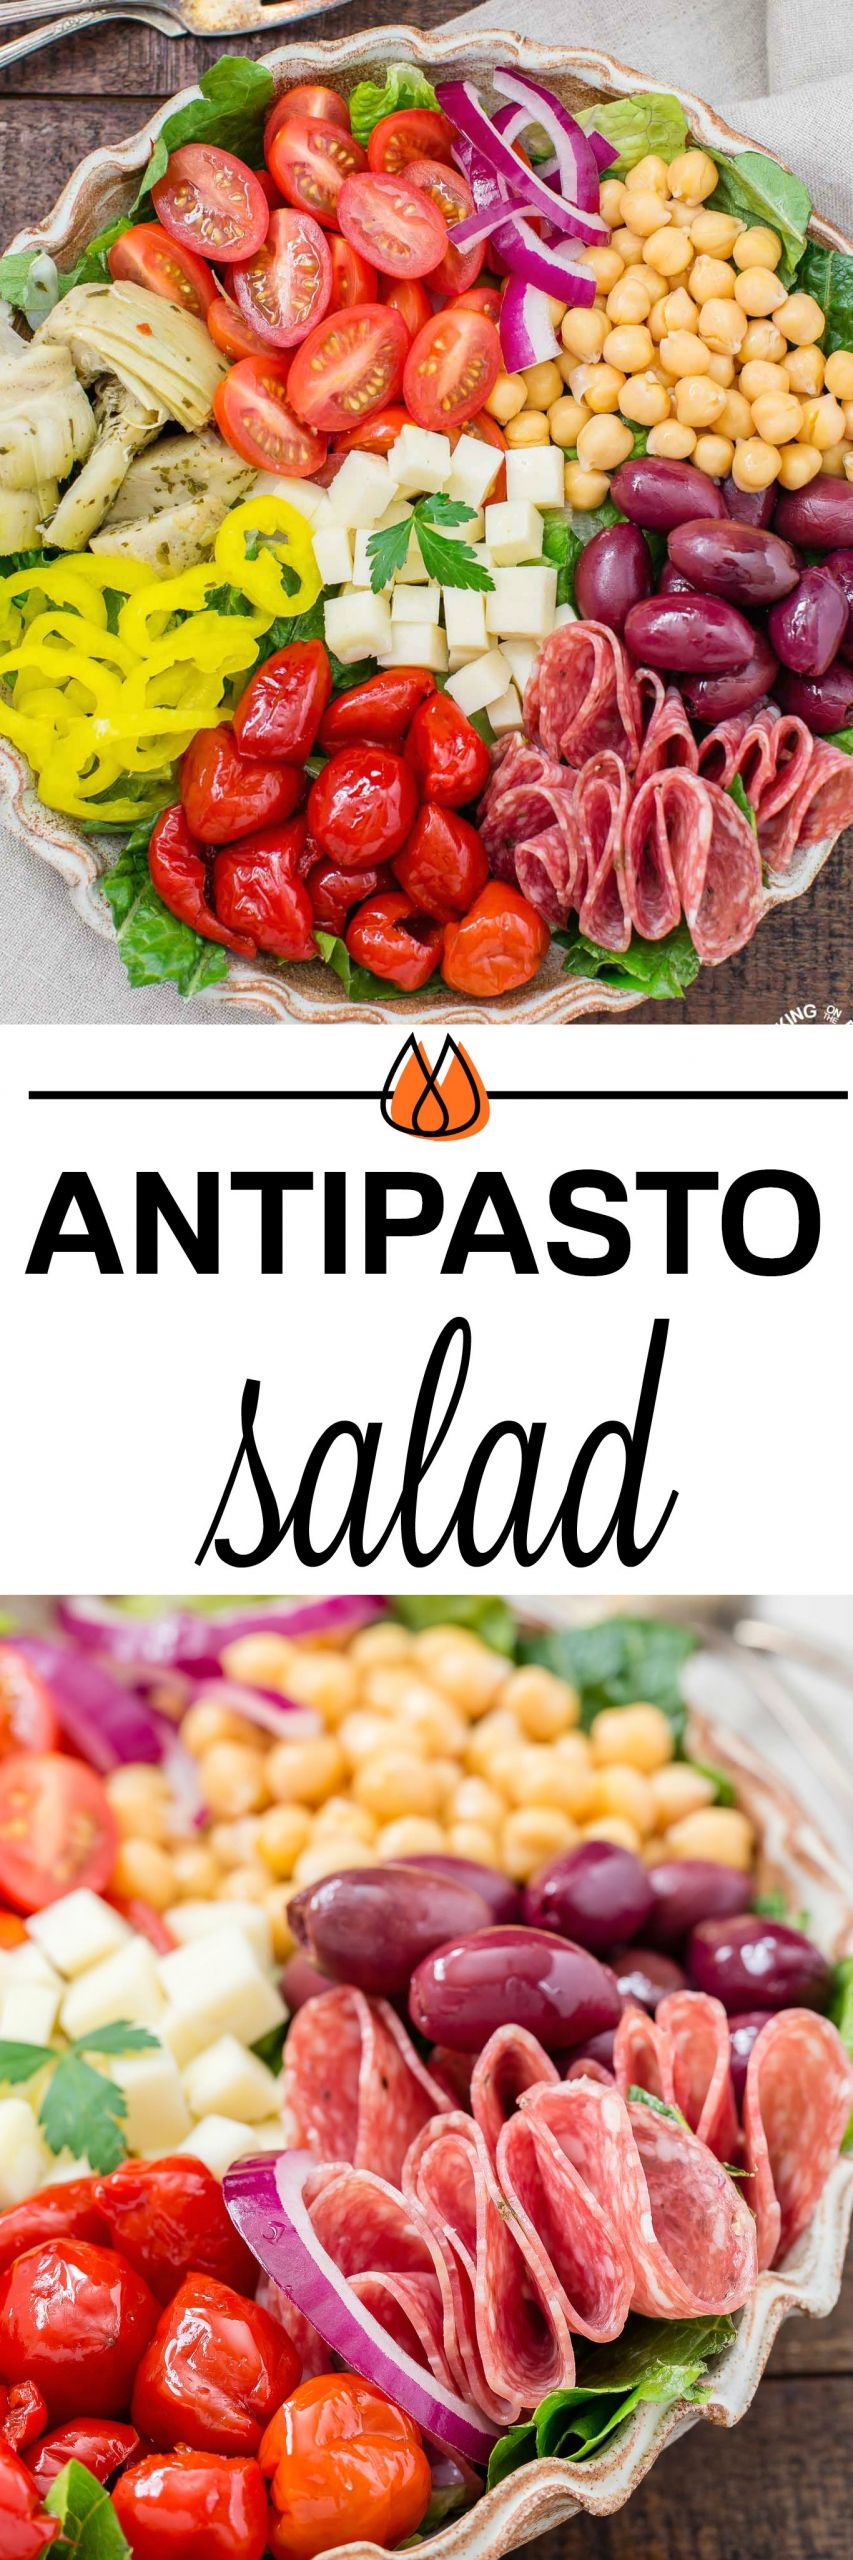 Italian Antipasto Salad
 ITALIAN ANTIPASTO SALAD